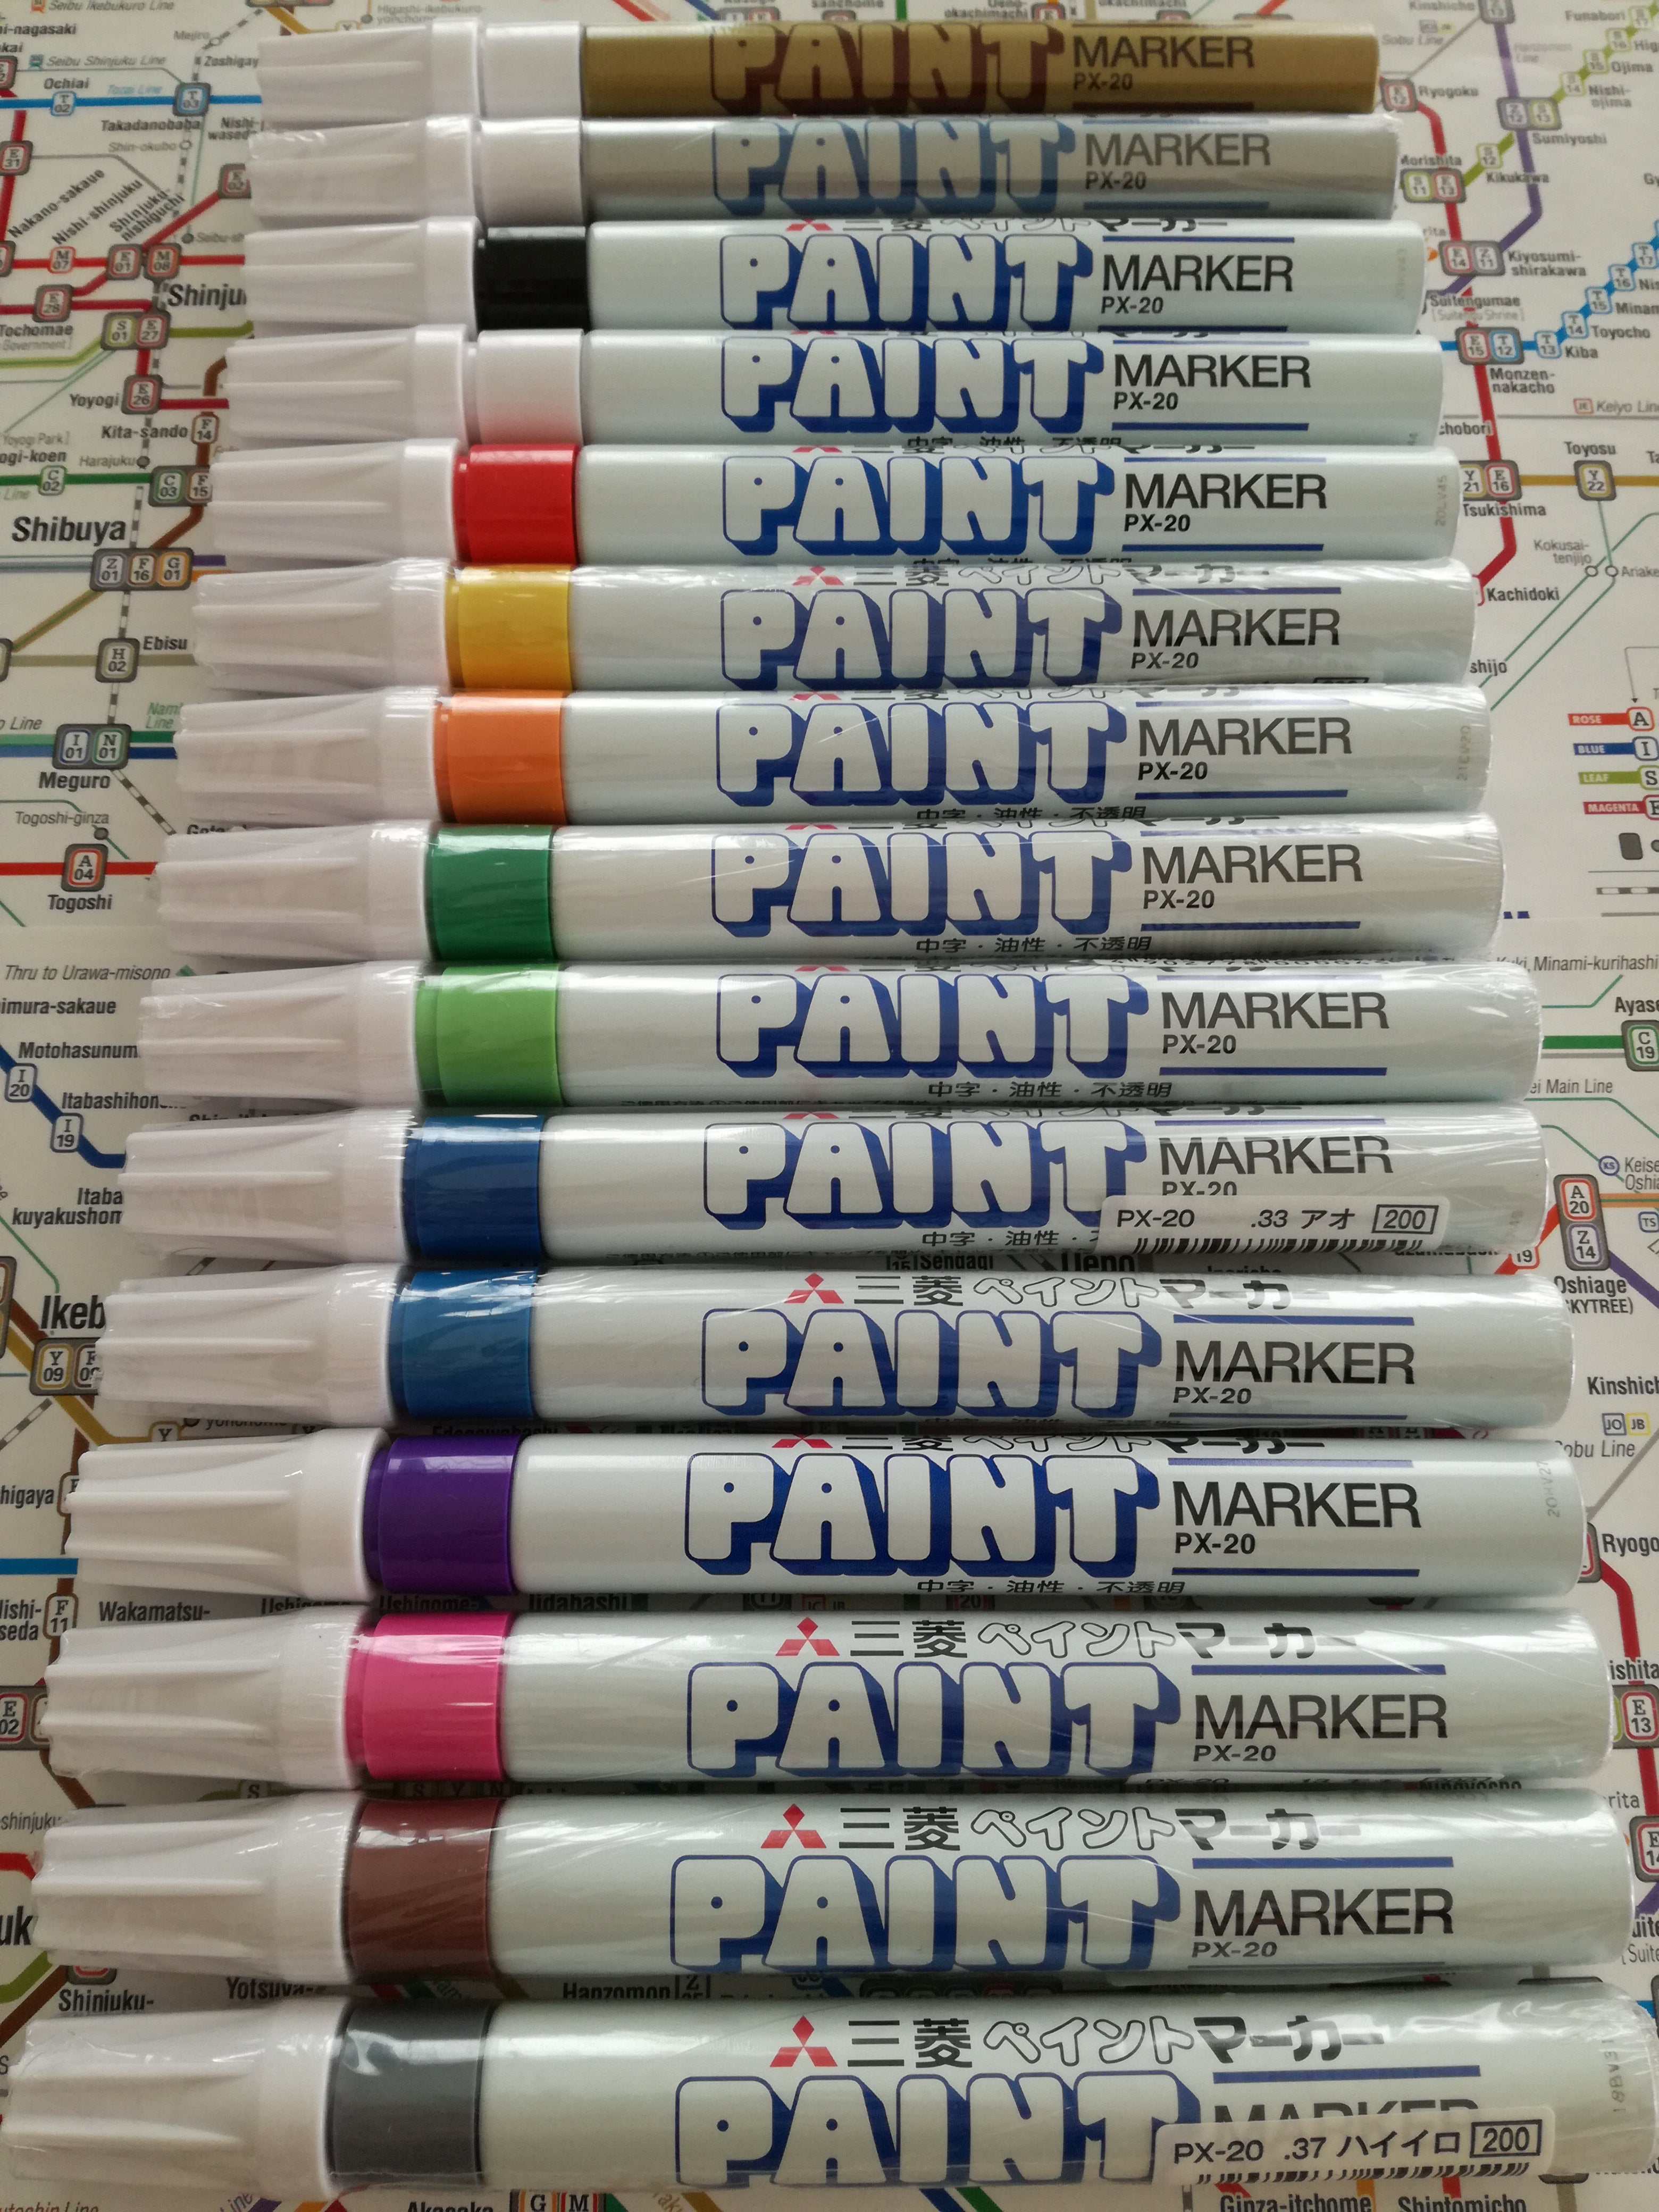 Uni PX-20 Paint marker 荳芽廠驩帷ｭ� 繝壹う繝ｳ繝医�槭�ｼ繧ｫ繝ｼ荳ｭ蟄� 窶� MarkerEki